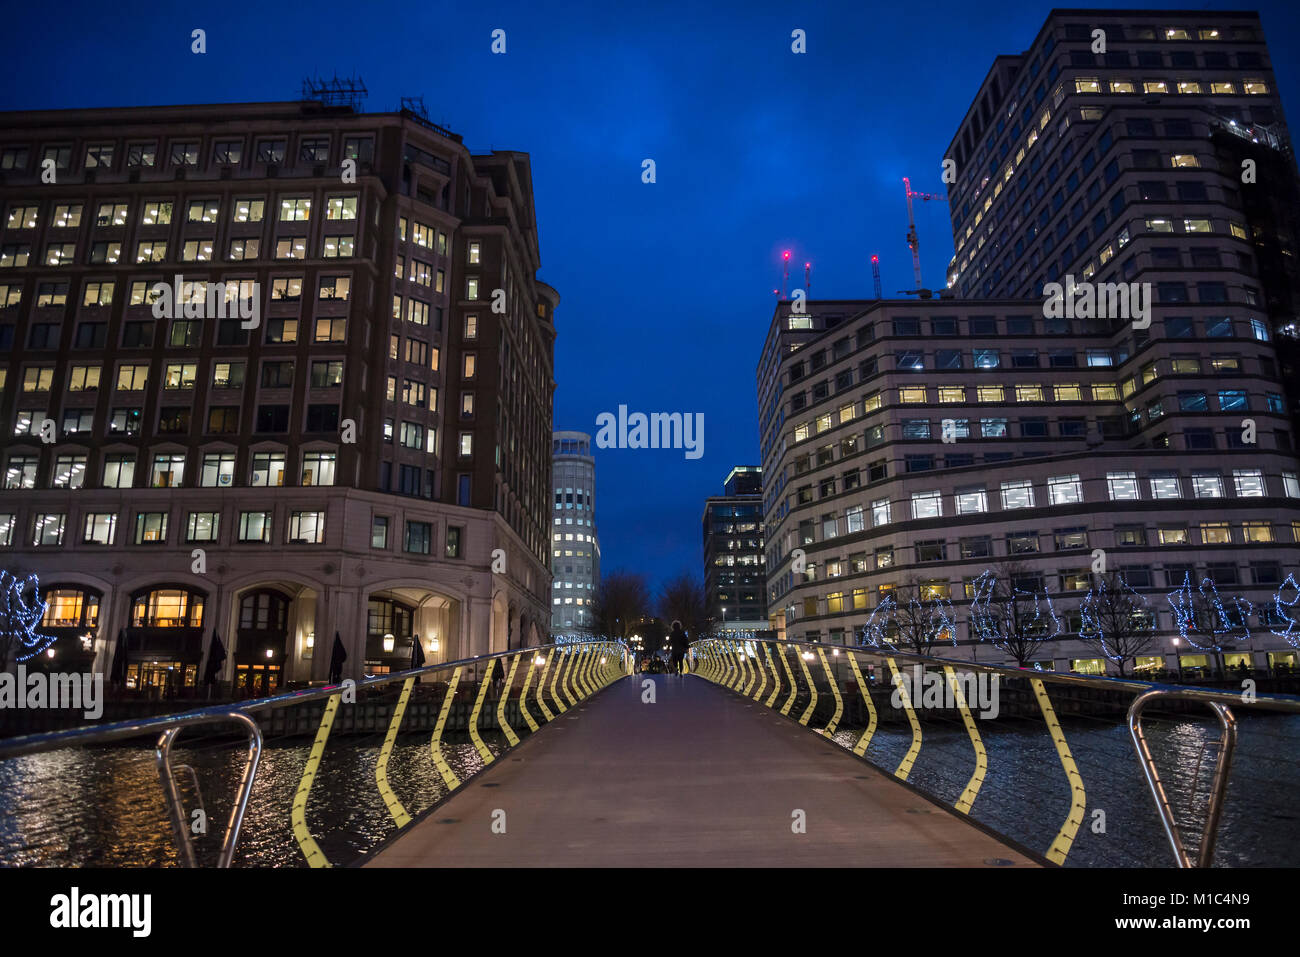 Ponte su acqua a Canary Wharf distretto finanziario di notte, Docklands, Londra, Inghilterra, Regno Unito Foto Stock